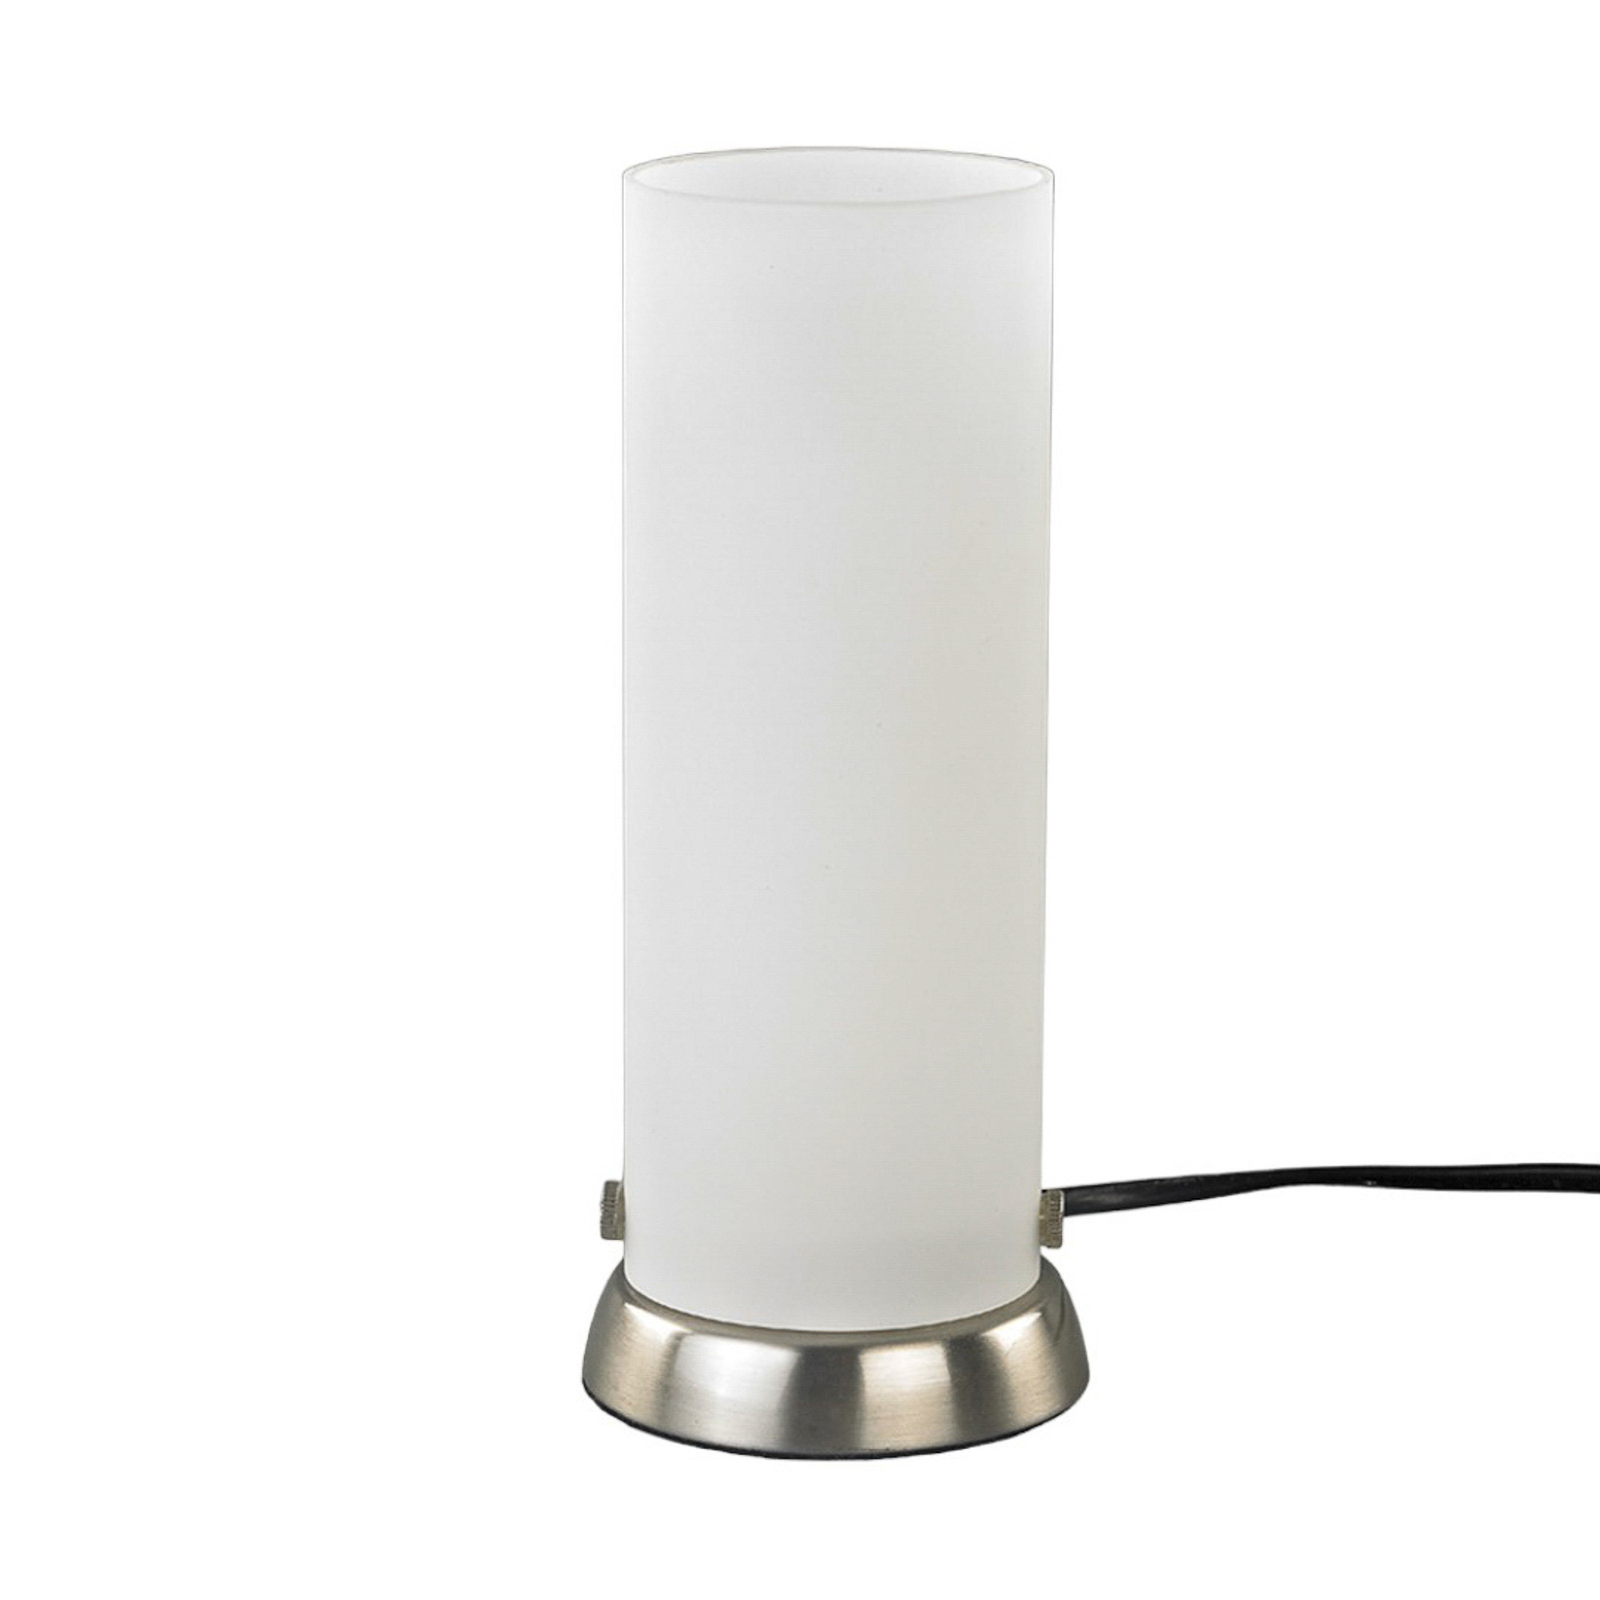 Sylinderformet bordlampe Andrew av glass